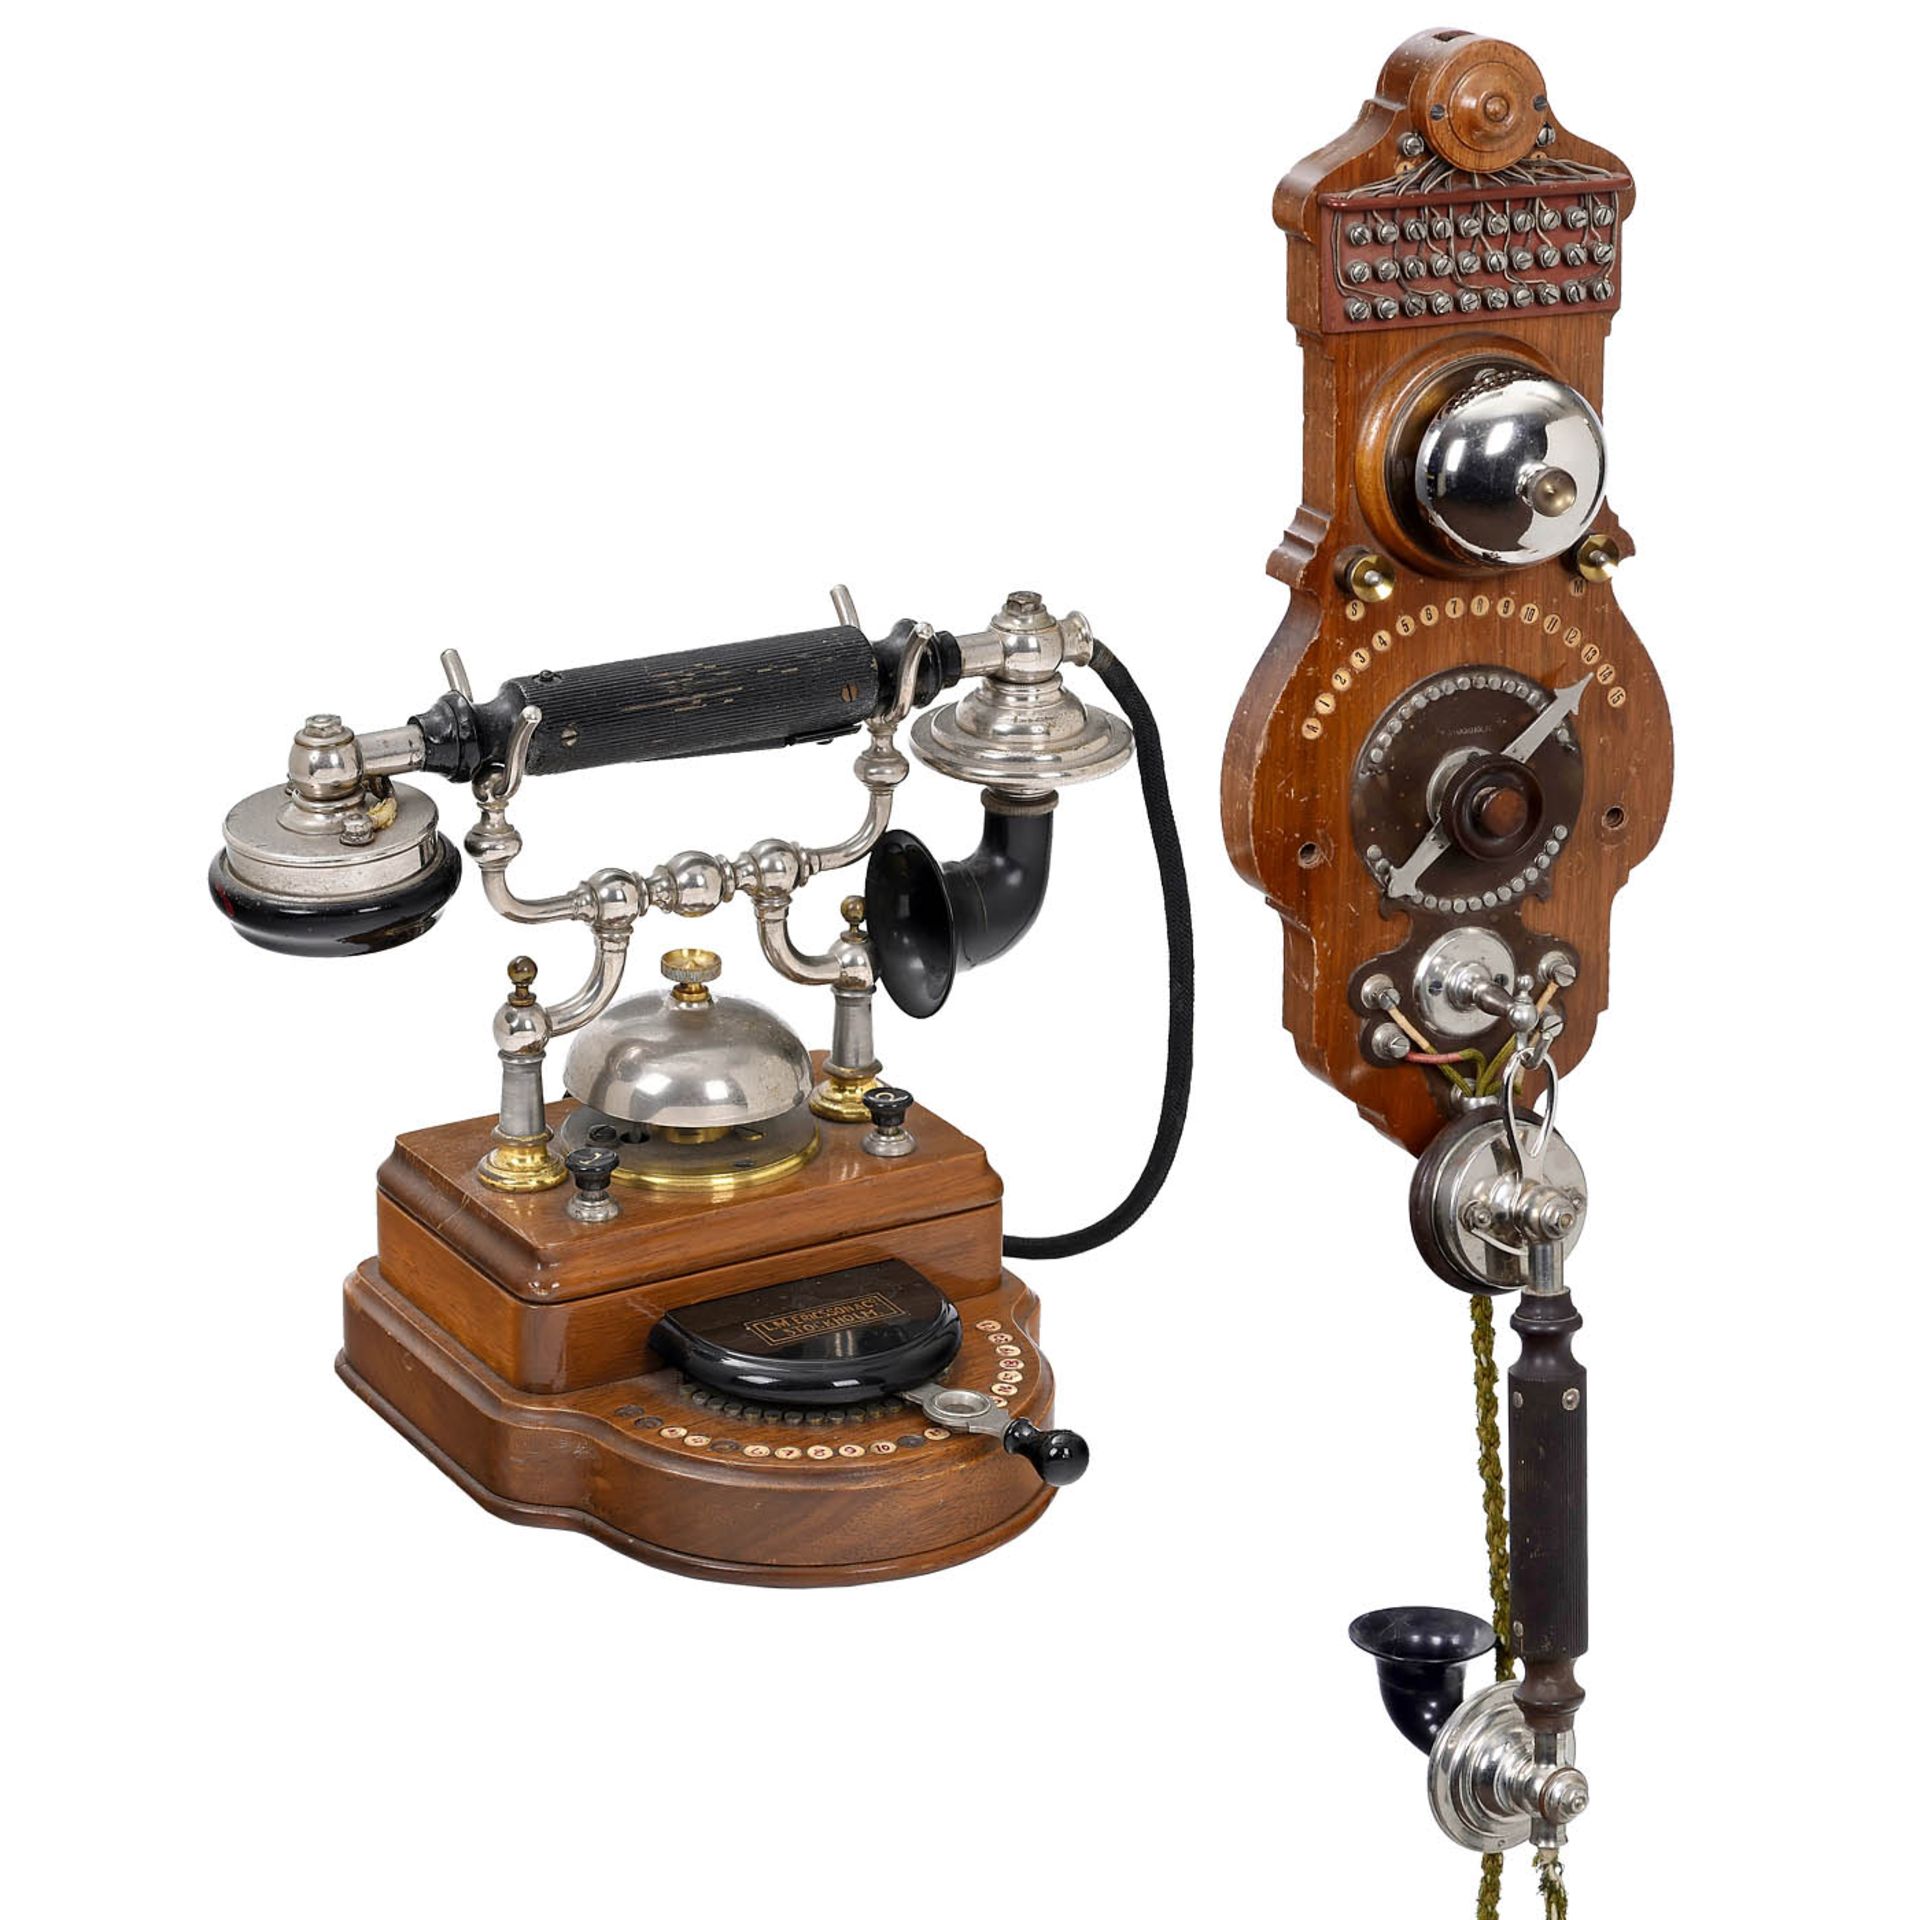 2 Ericsson Intercom Telephones, c. 1910